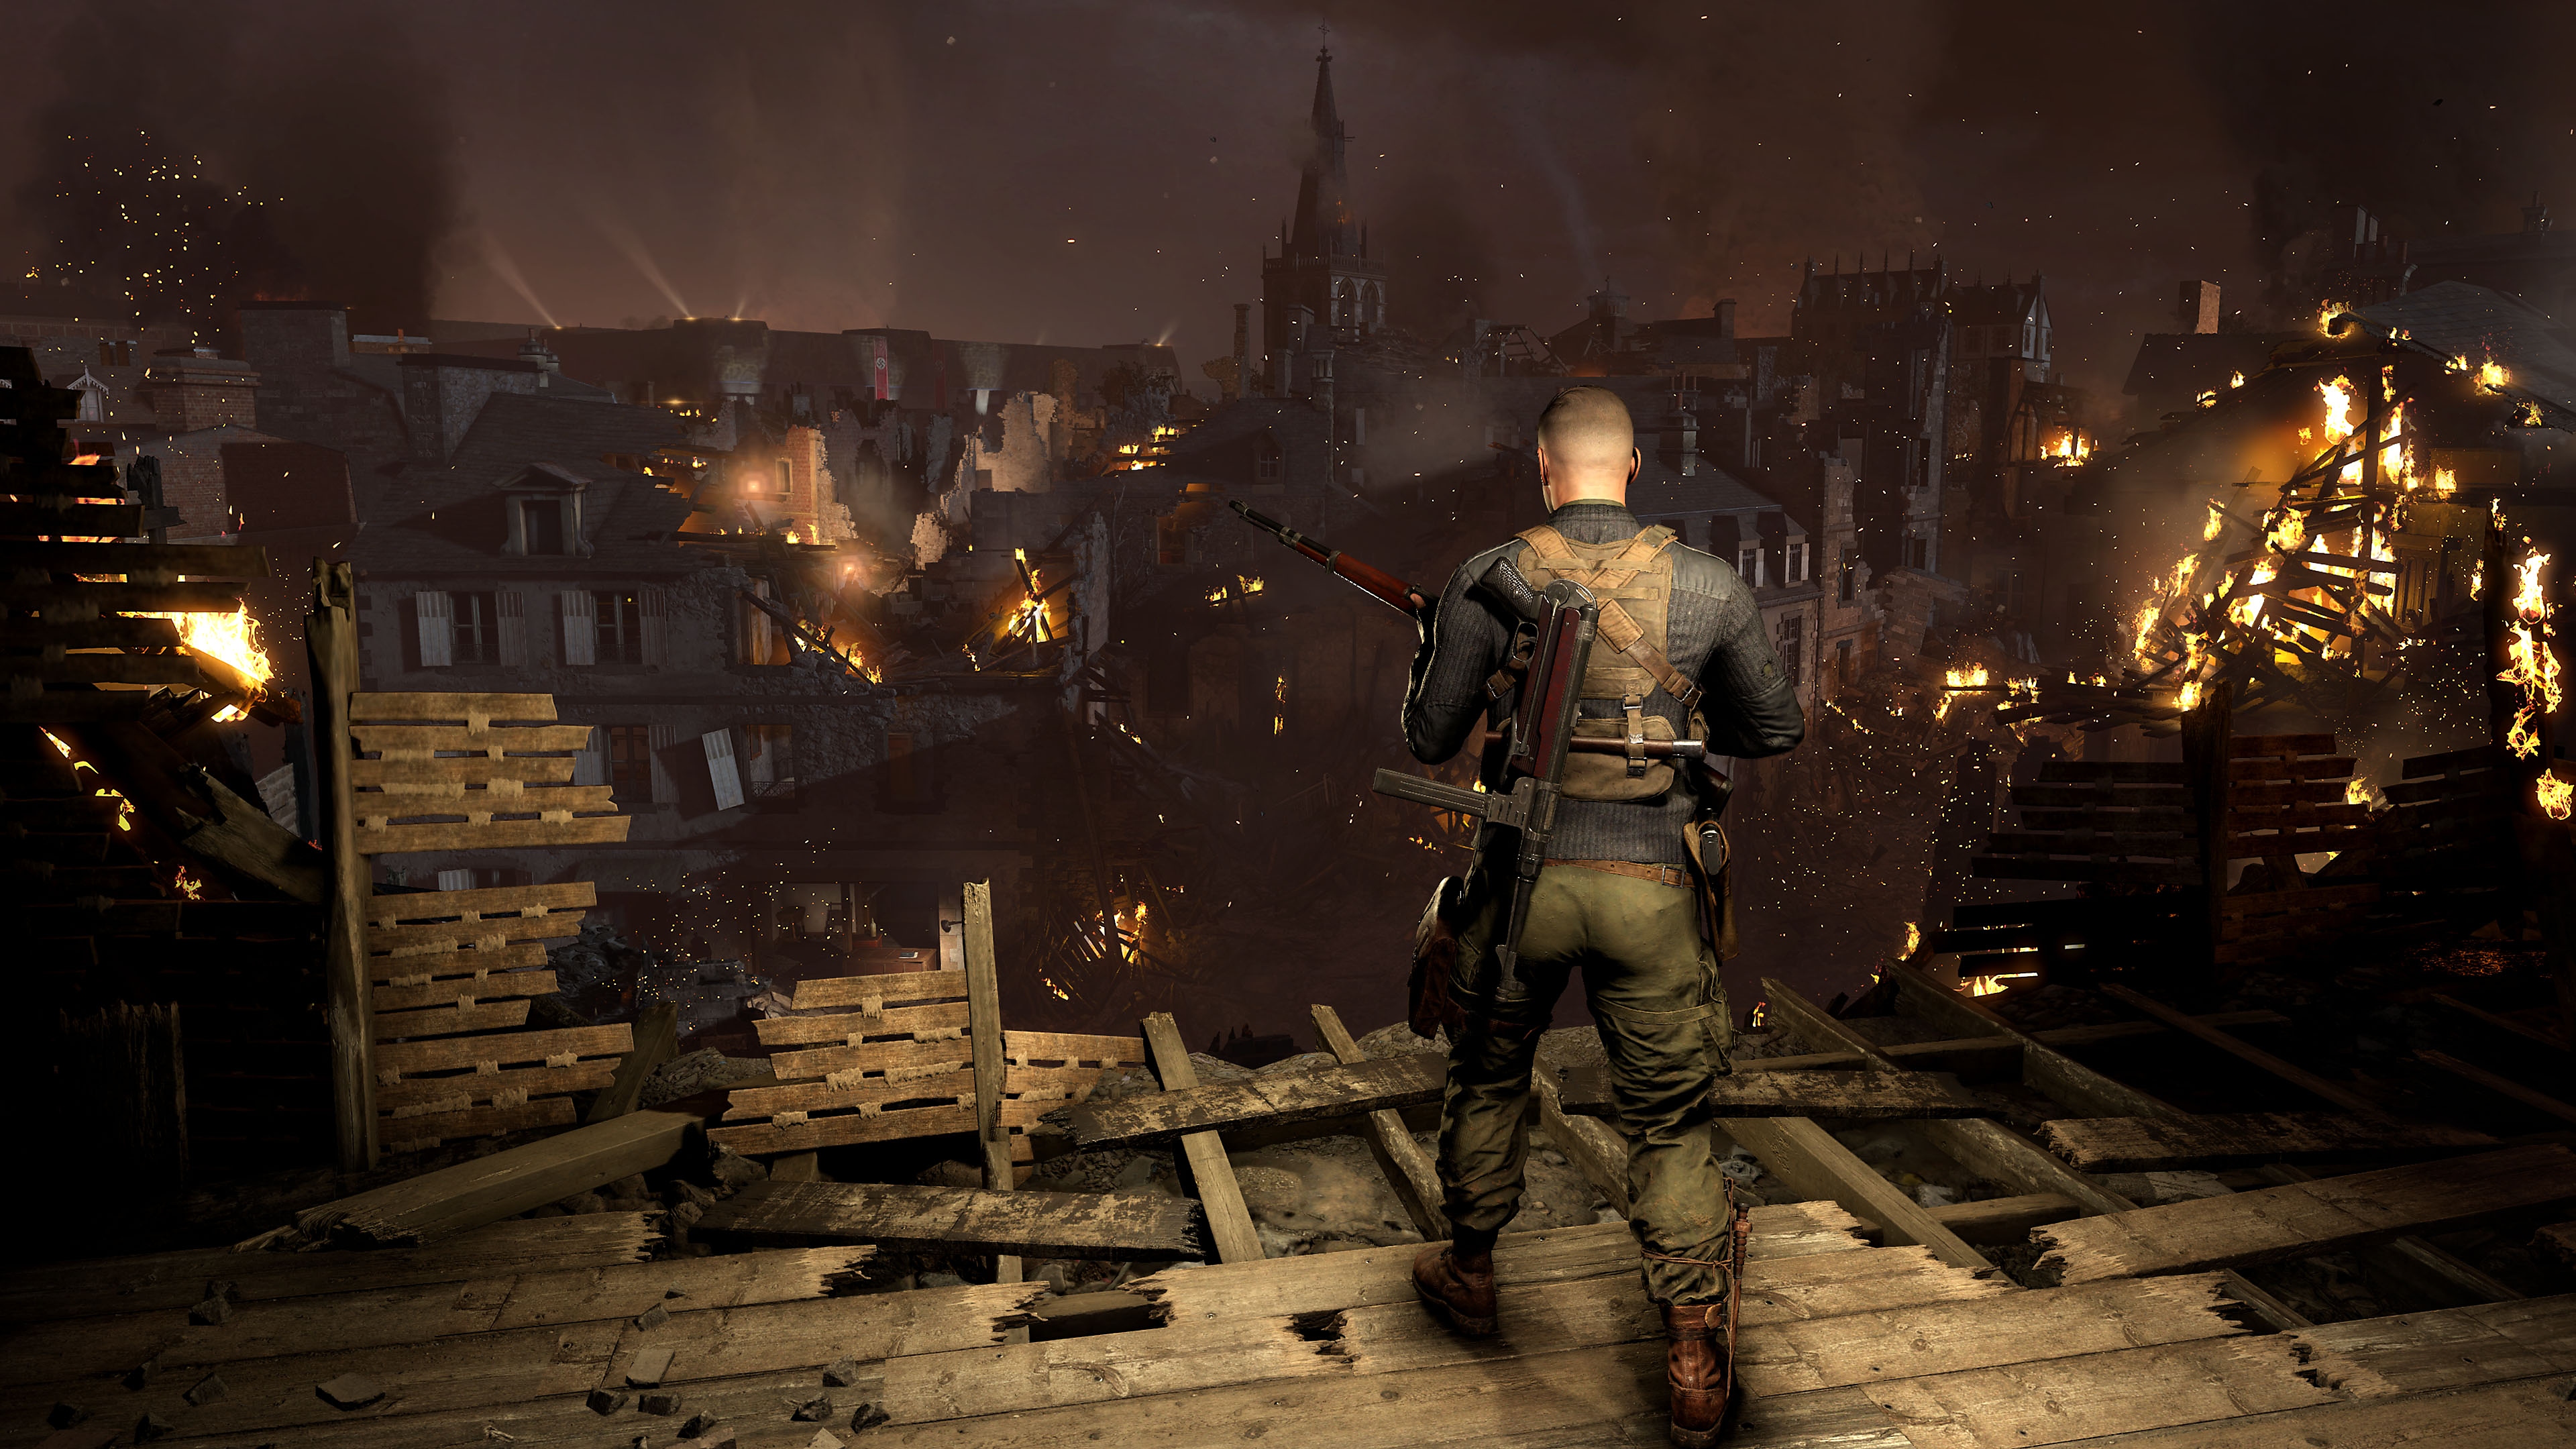 Istantanea della schermata di Sniper Elite 5 che mostra un personaggio che osserva dall'alto una città con edifici in fiamme